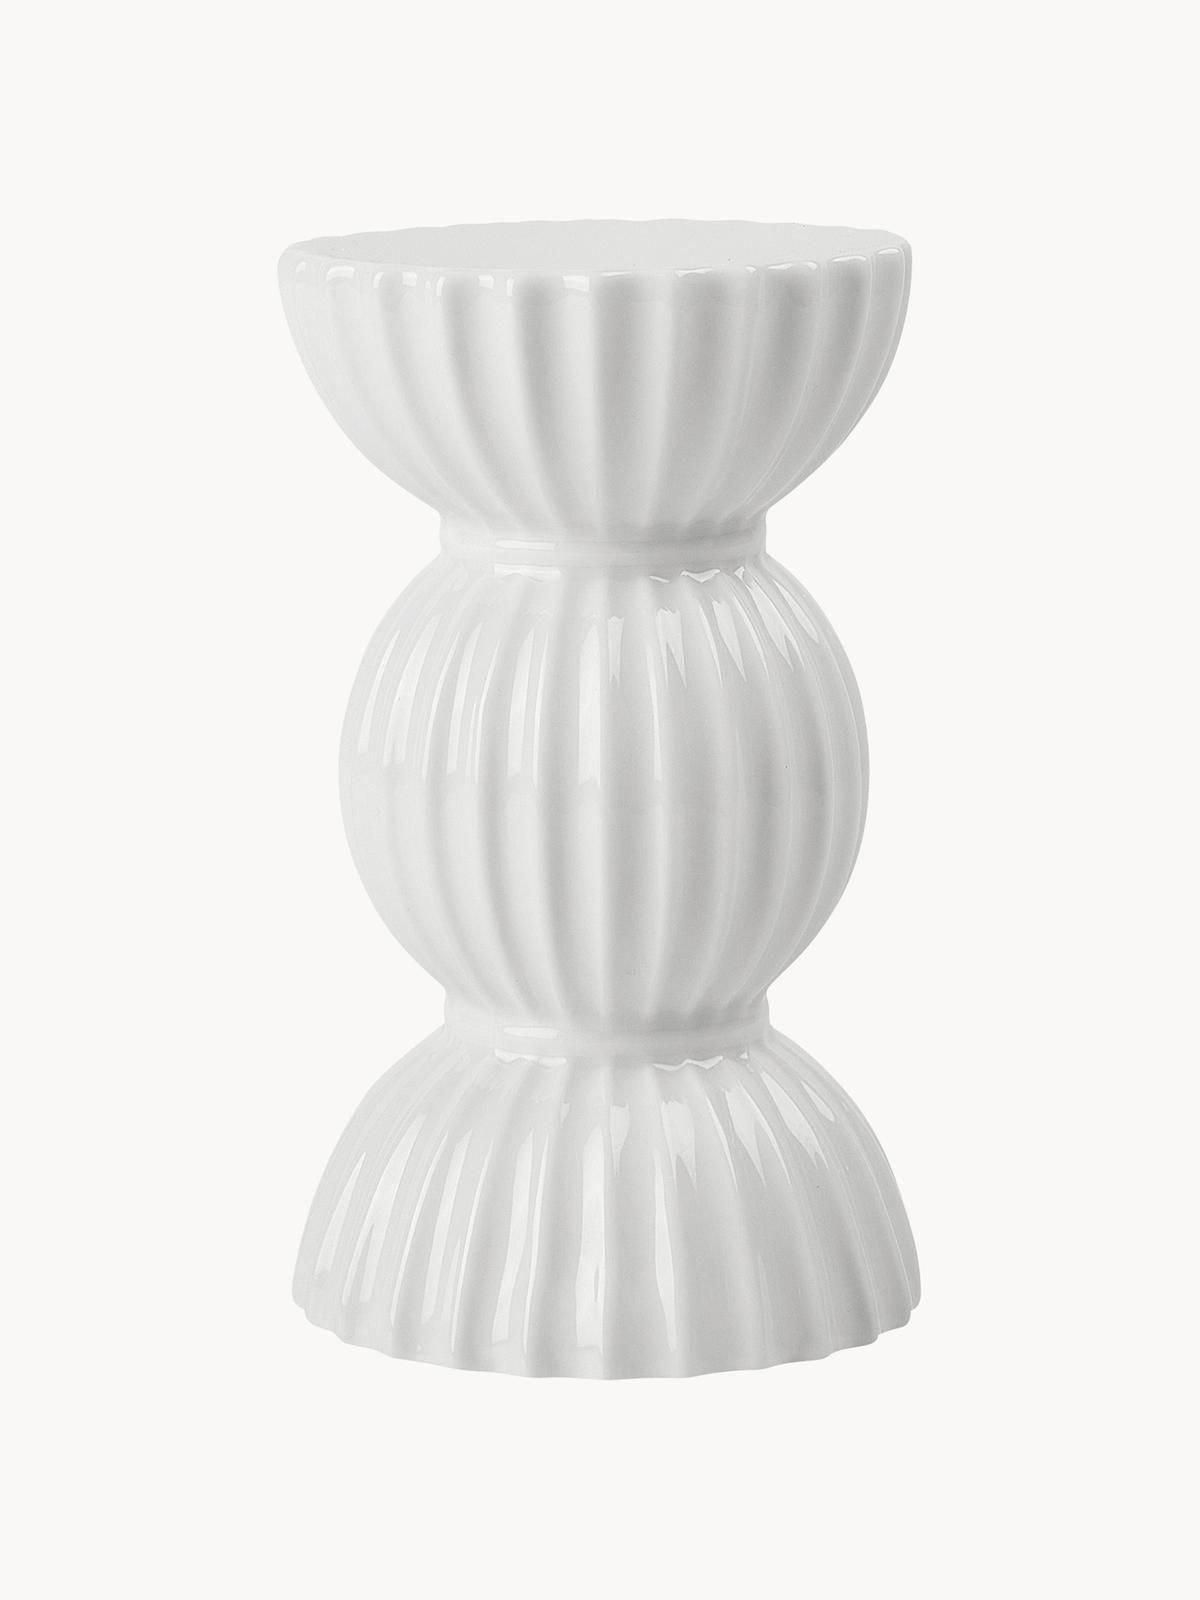 Porzellan-Kerzenhalter Tura mit geriffelter Oberfläche von Lyngby Porcelaen